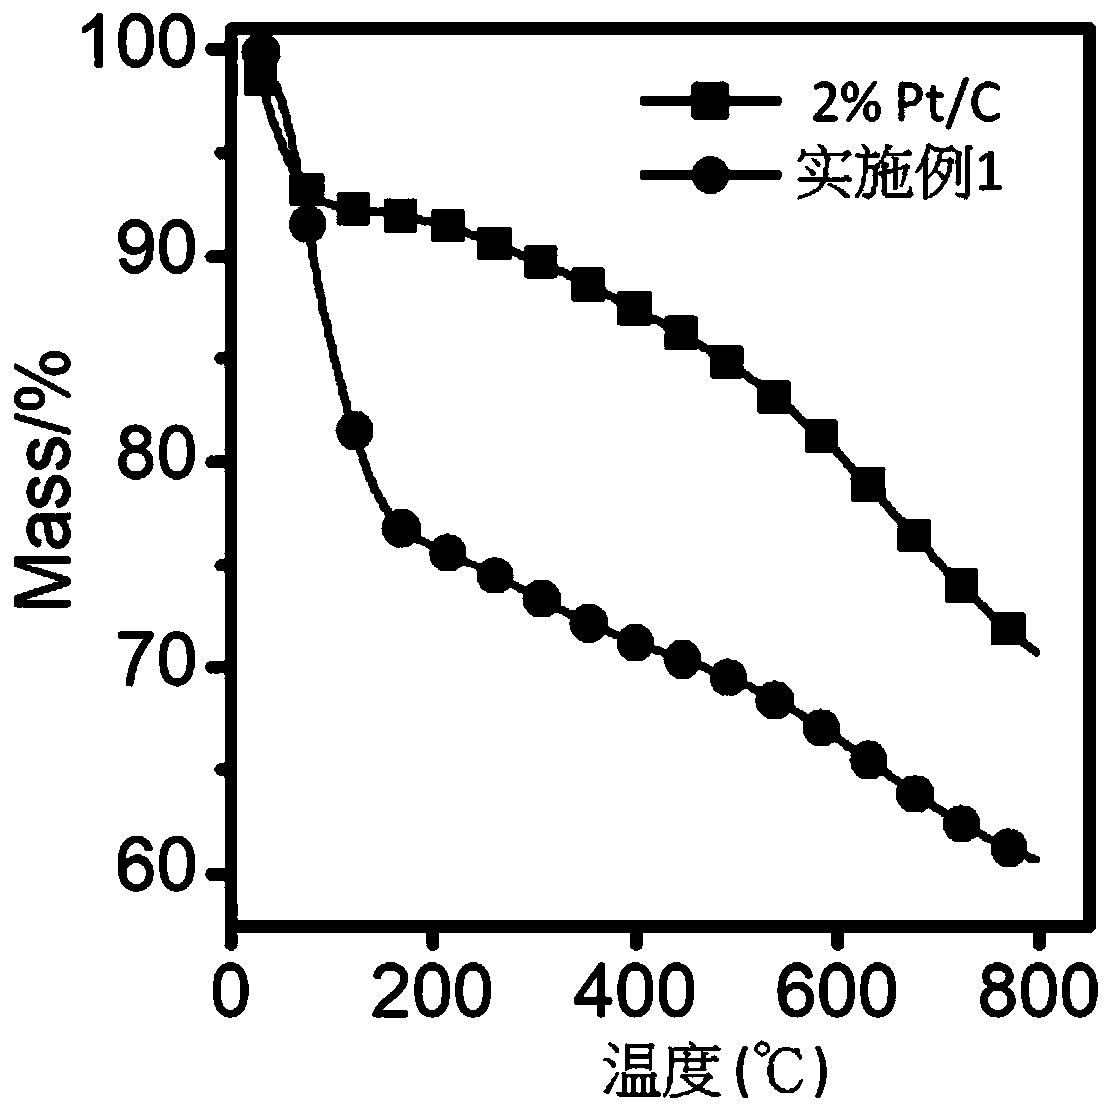 Preparation method of Pt/C catalyst, Pt/C catalyst and application of Pt/C catalyst